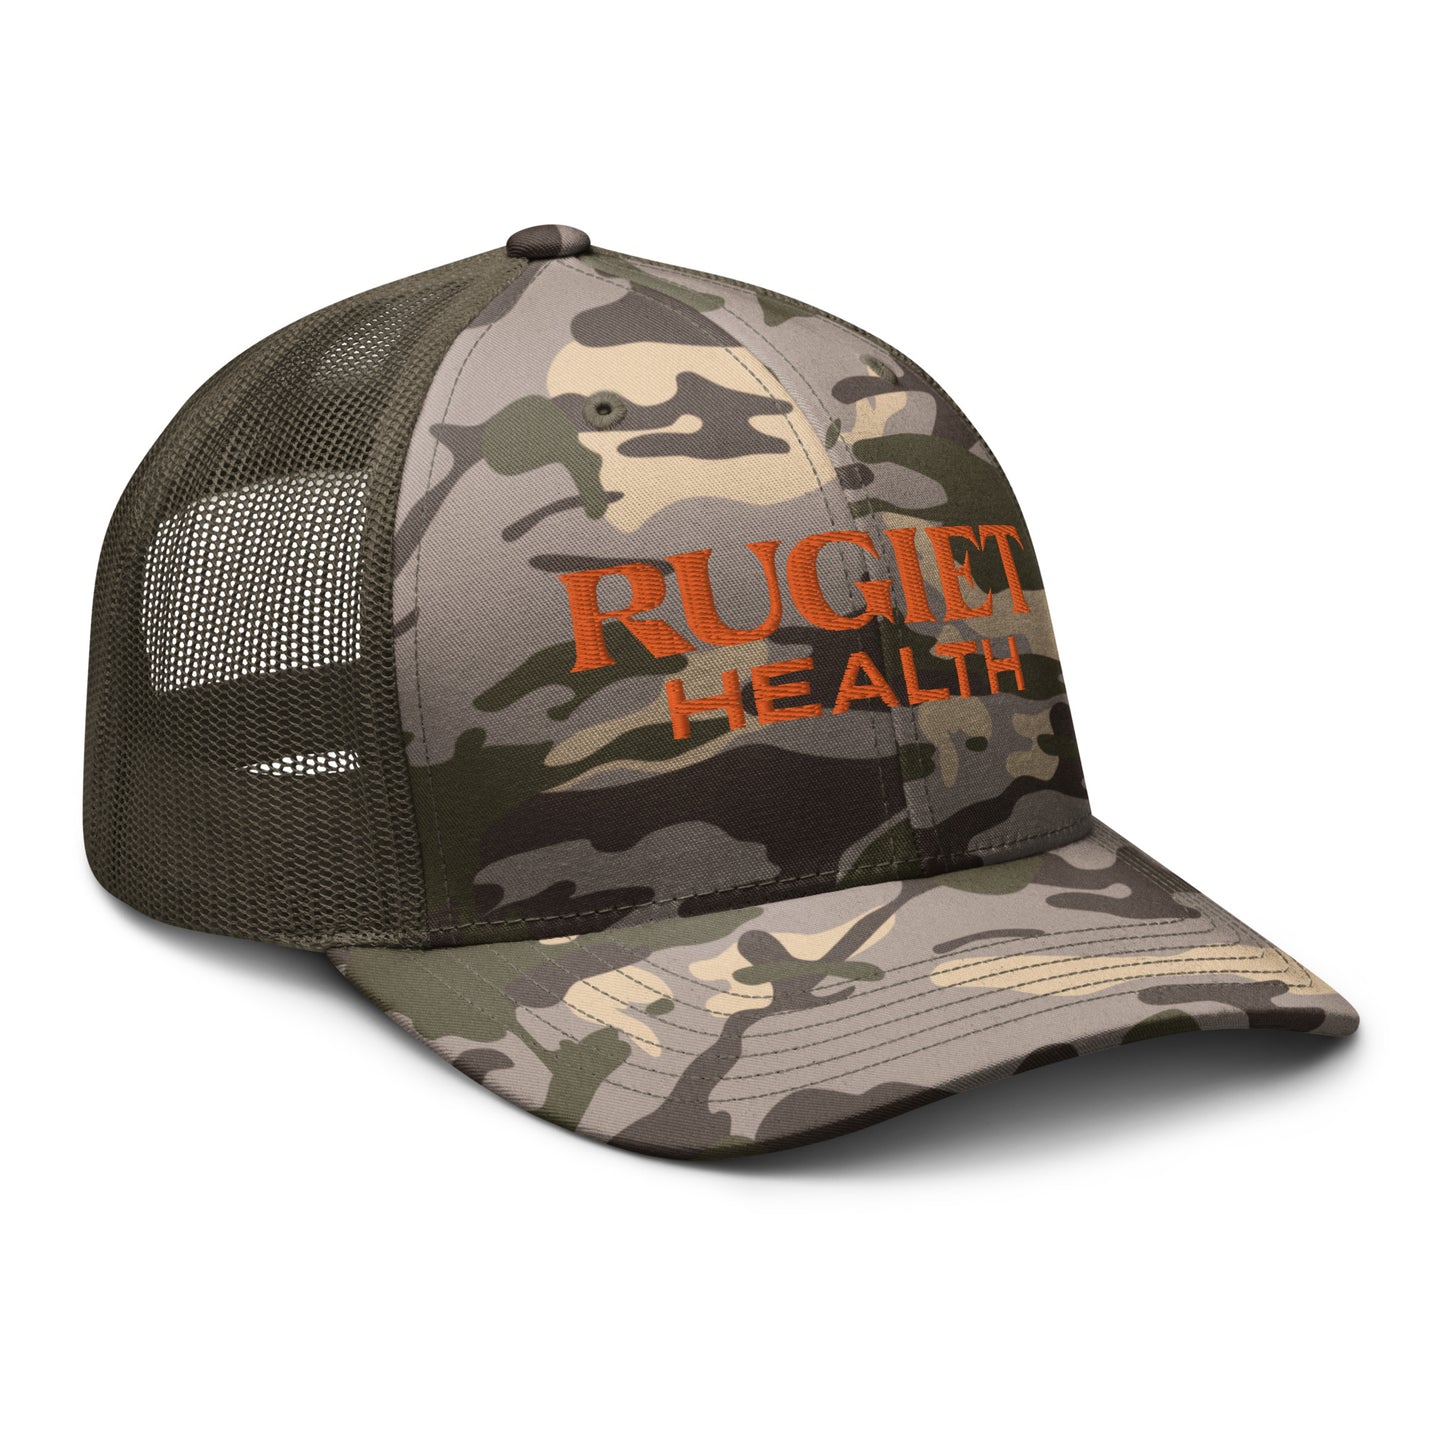 Camouflage trucker hat (orange) - Rugiet Health